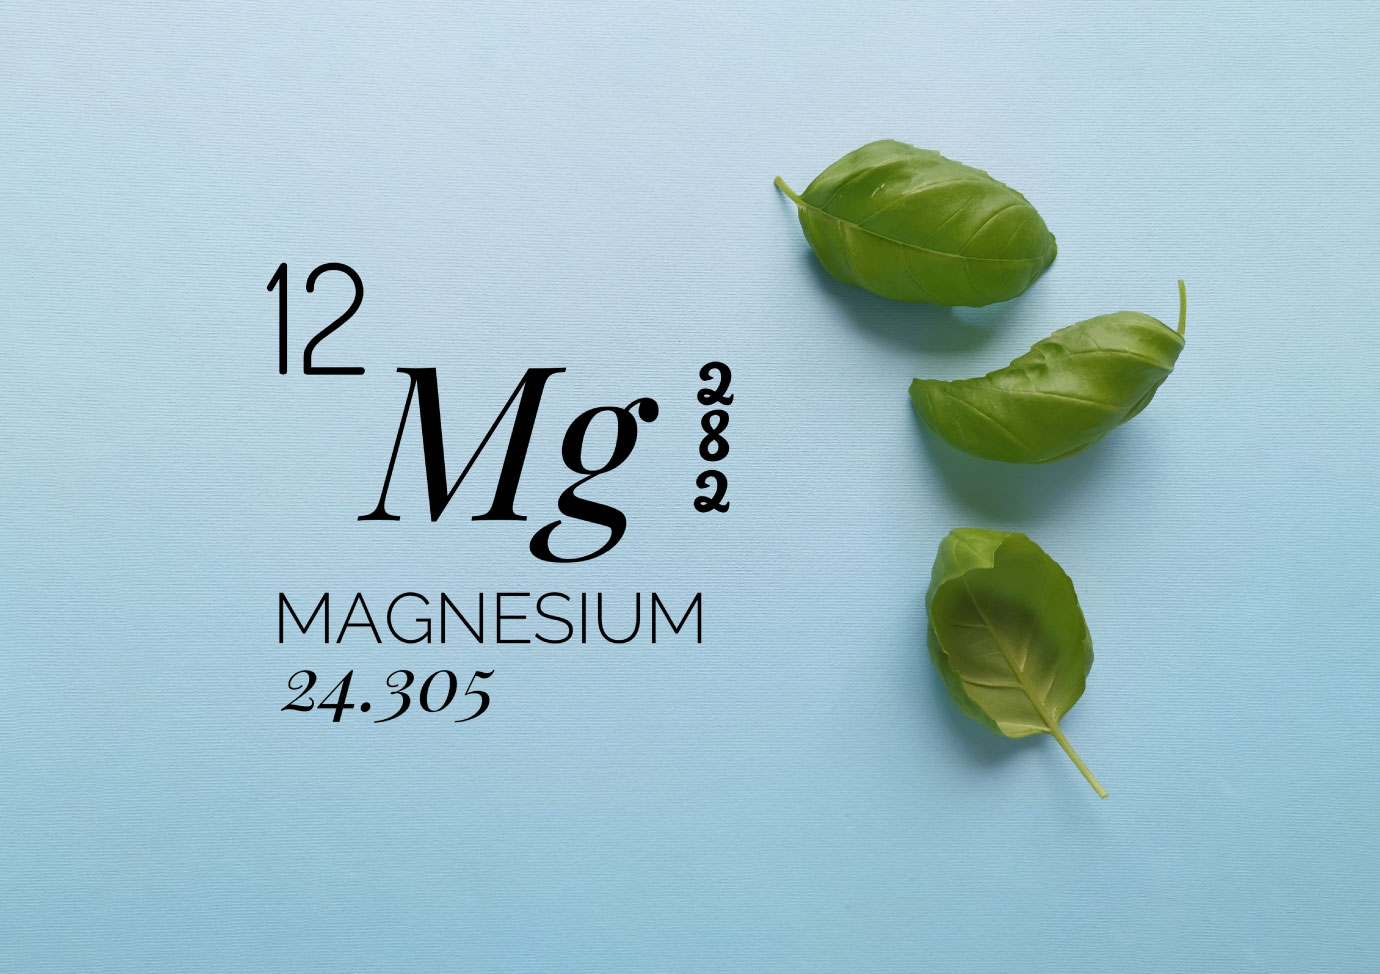 imagem do símbolo quimico do magnésio